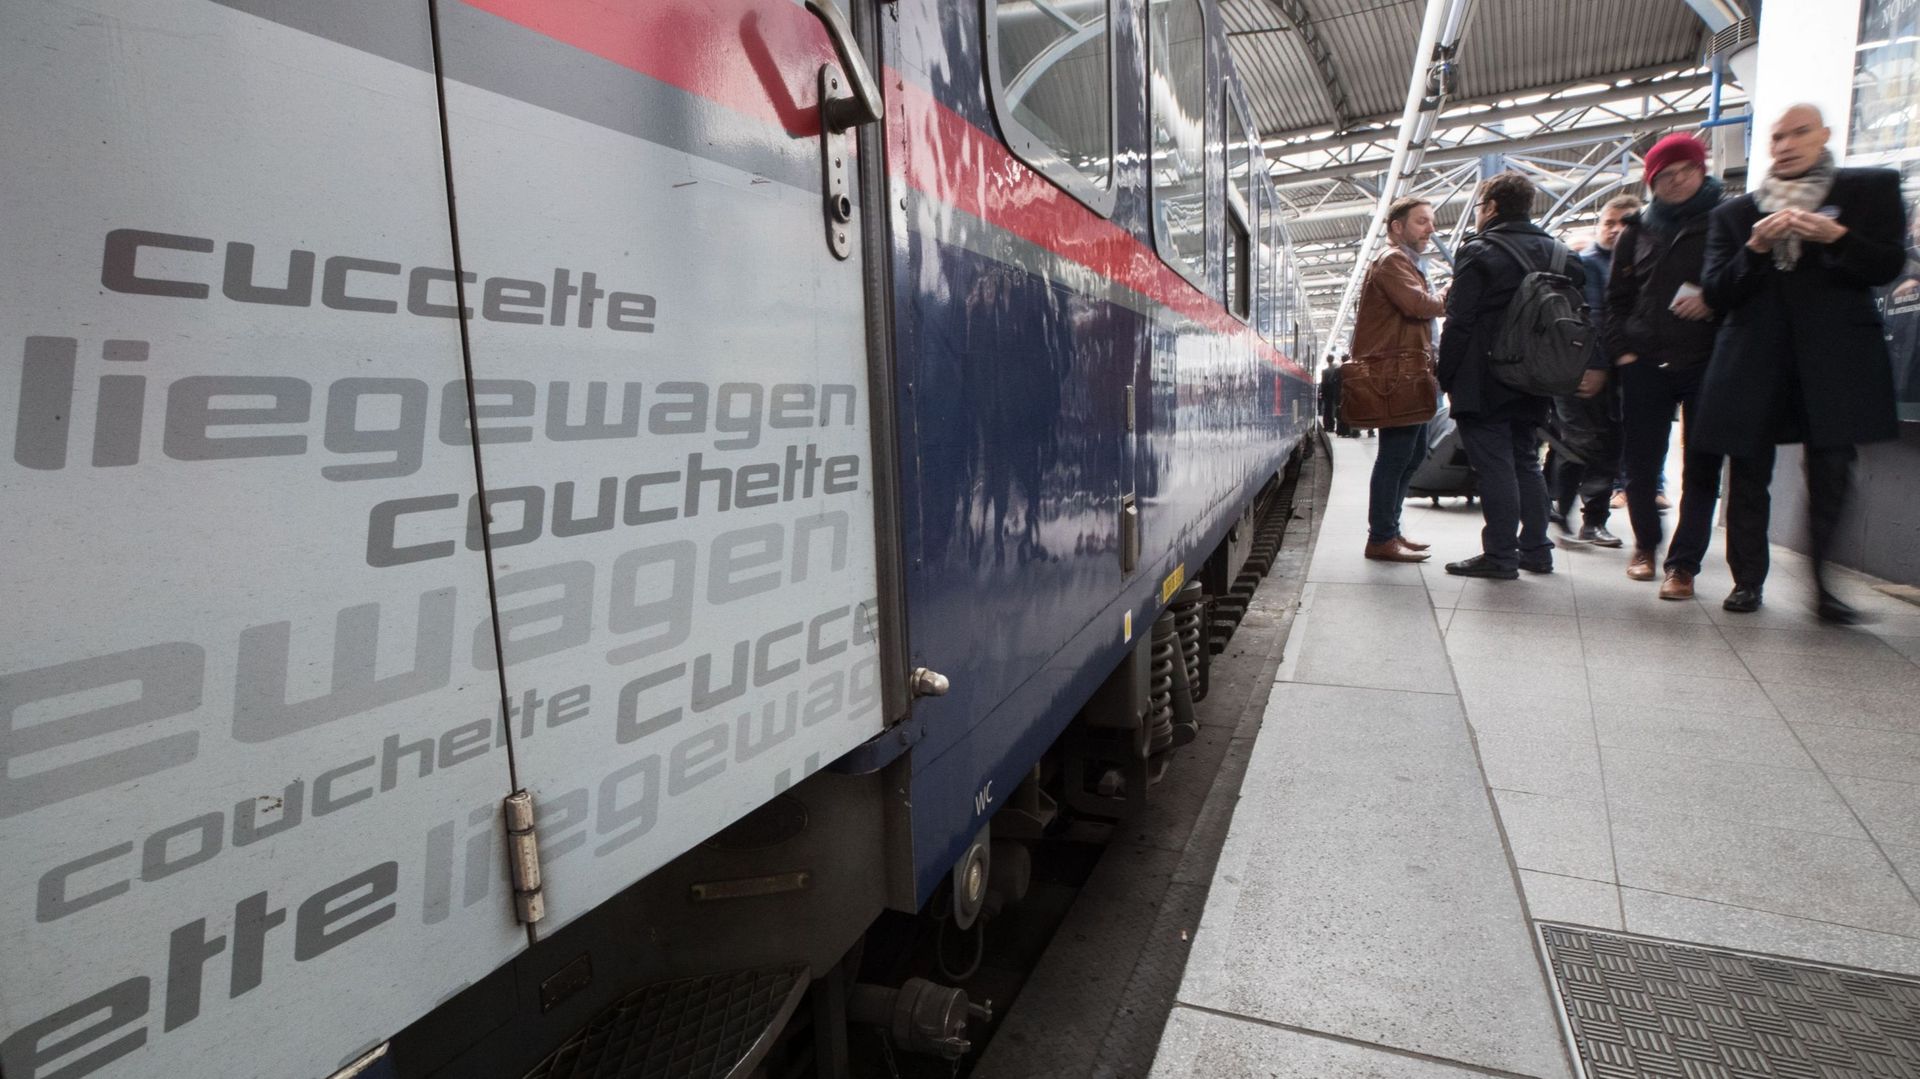 Le train de nuit officiellement de retour en Belgique après 16 ans d'absence: Et maintenant?